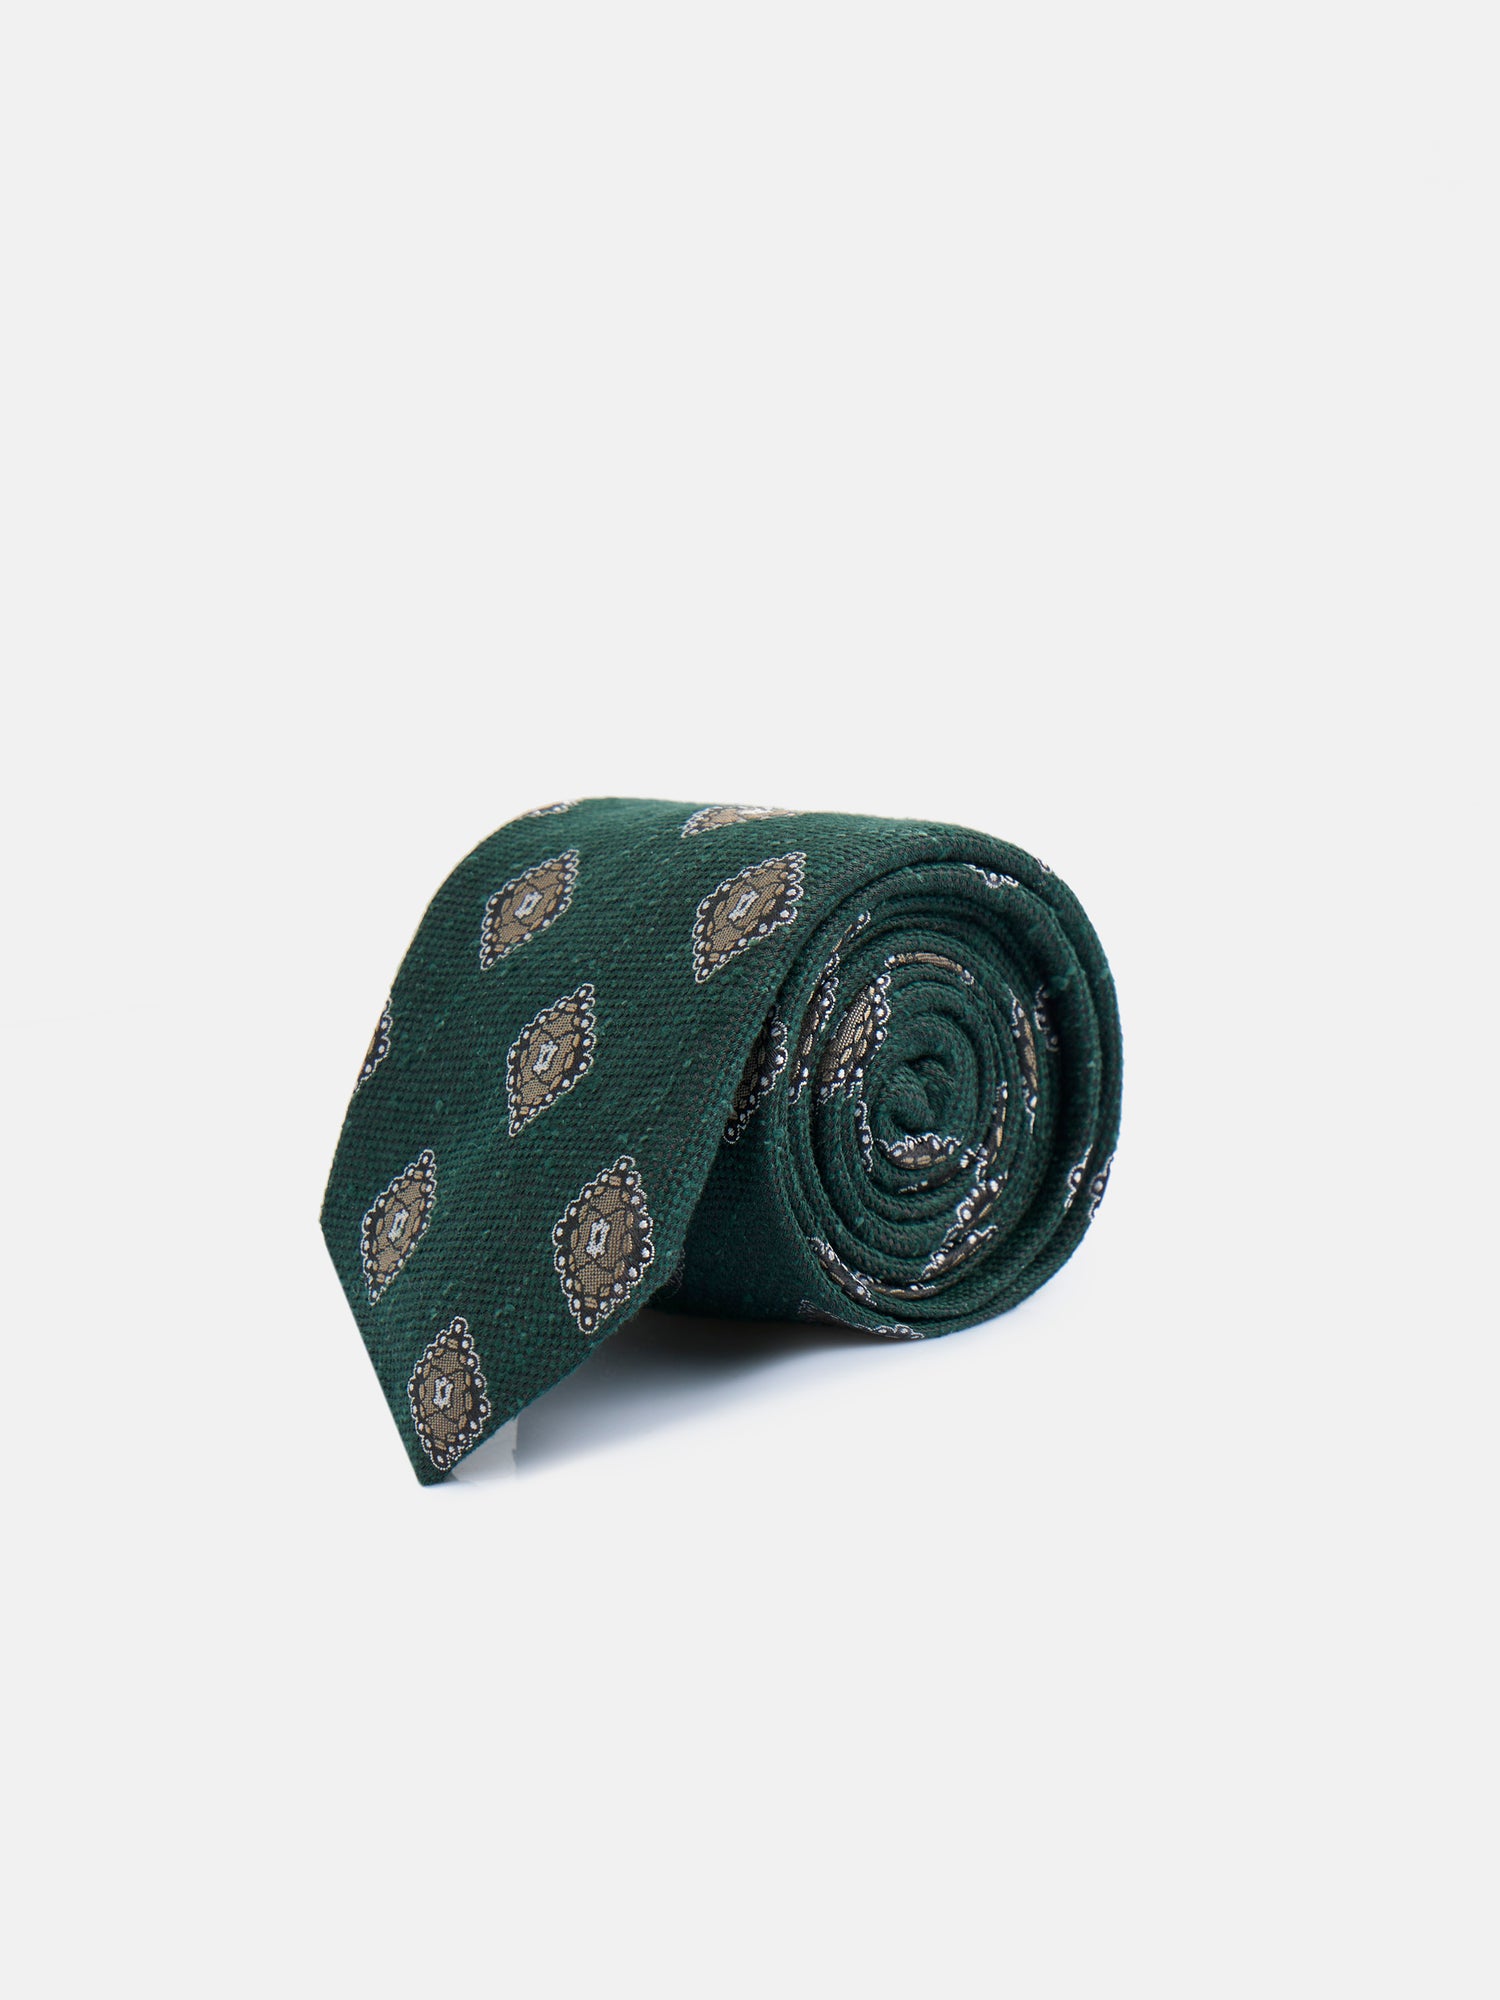 Corbata jaspeada motivos verde